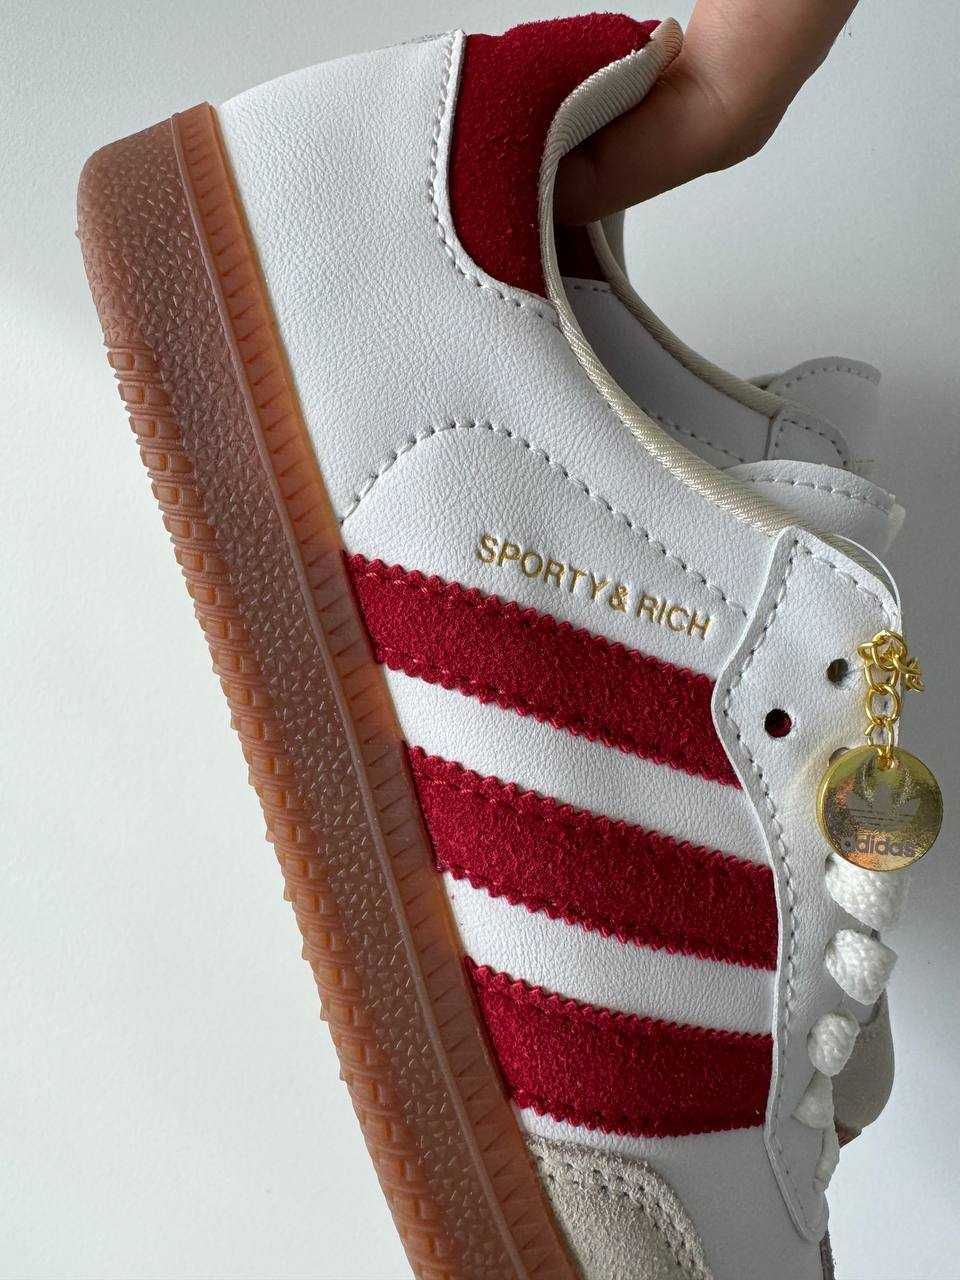 Жіночі кросівки Adidas Sporty & Rich білий з червоним 0717 НОВИНКА